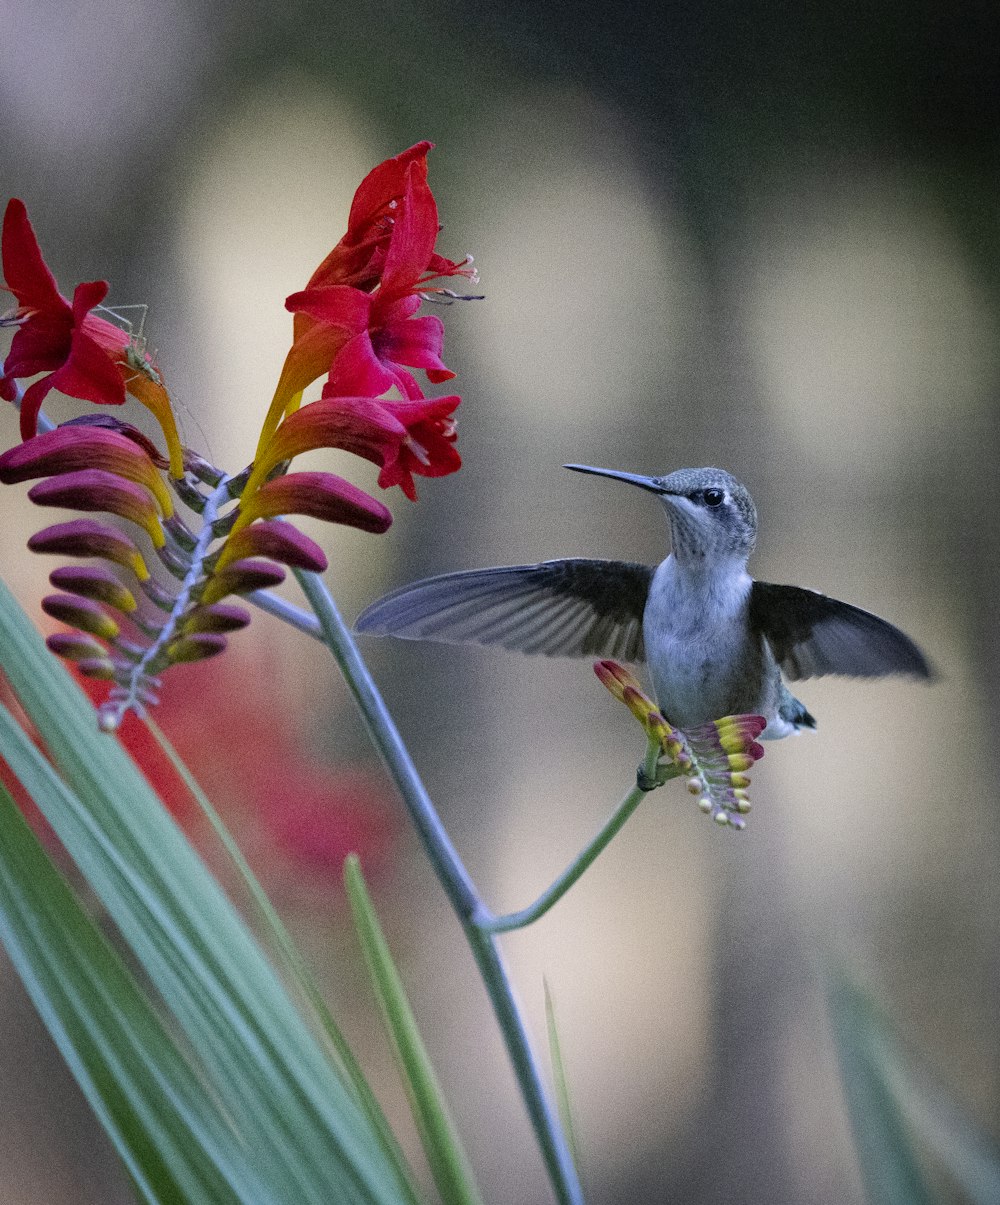 un colibrì che vola verso un fiore